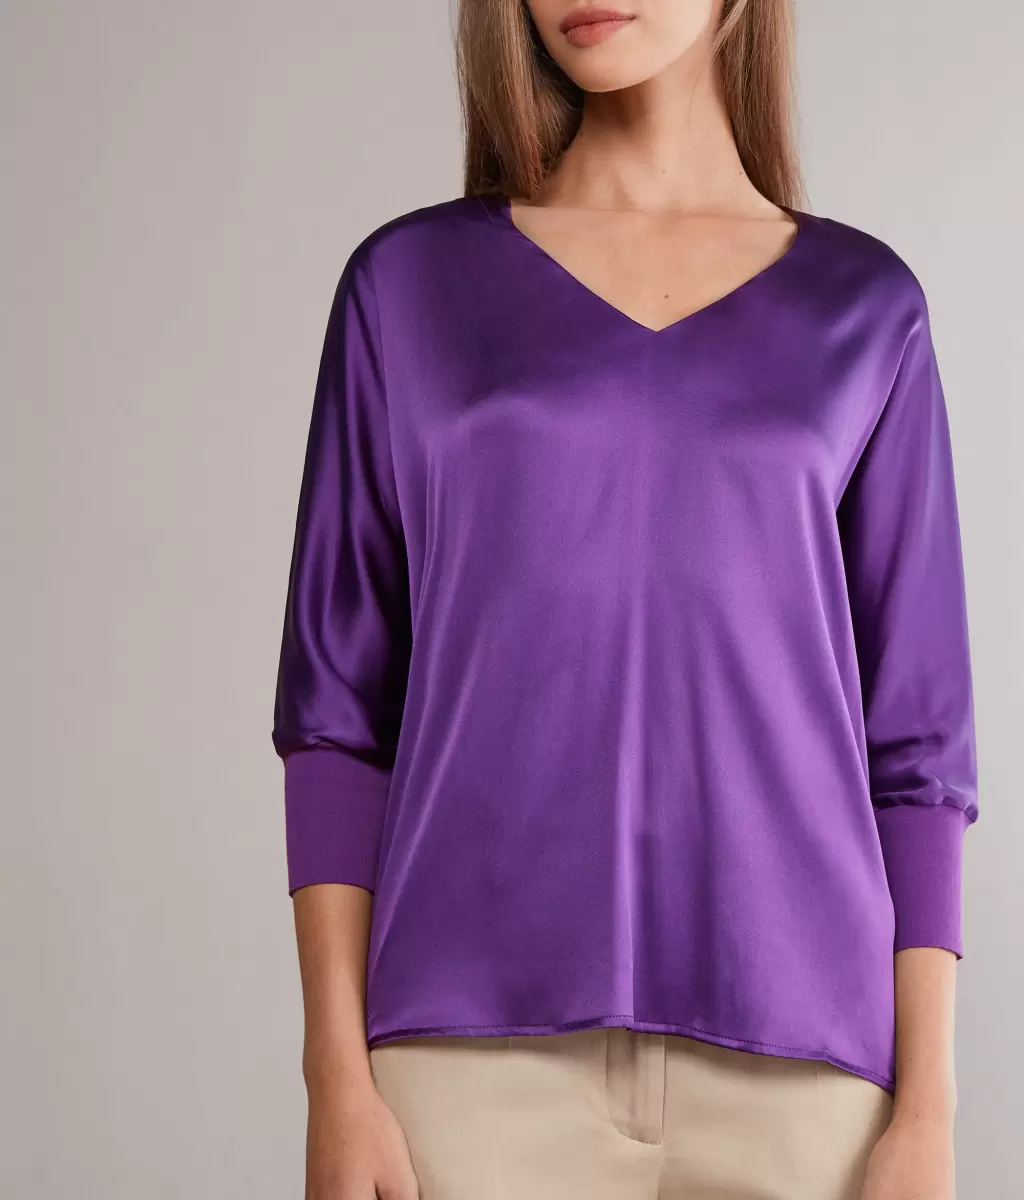 Falconeri Koszule I Bluzki Violet Jedwabna Bluzka Z Dekoltem W Serek Kobieta - 1